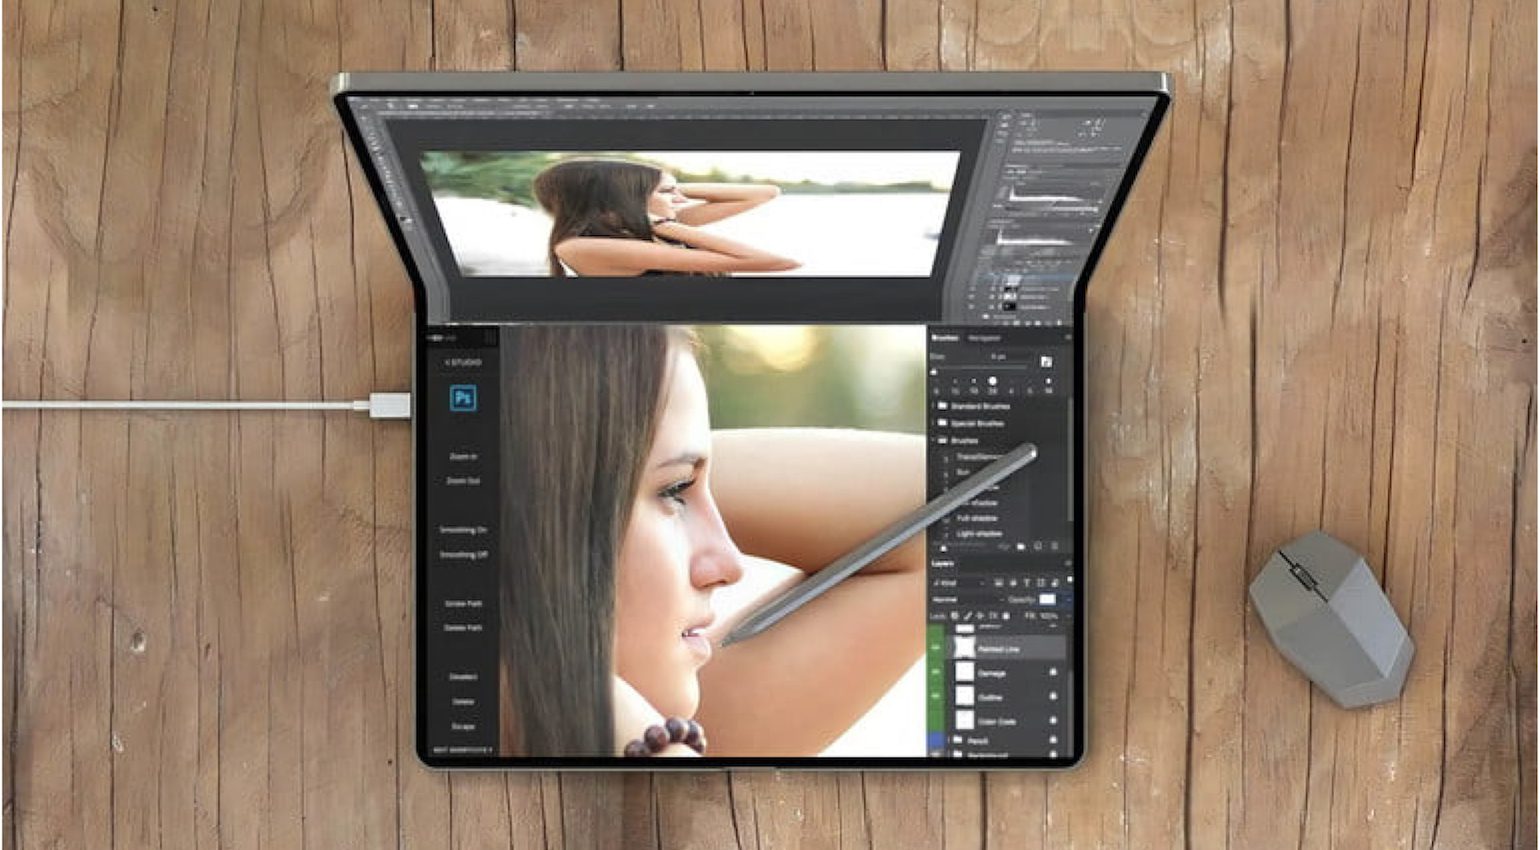 Apple foldable iPad/MacBook